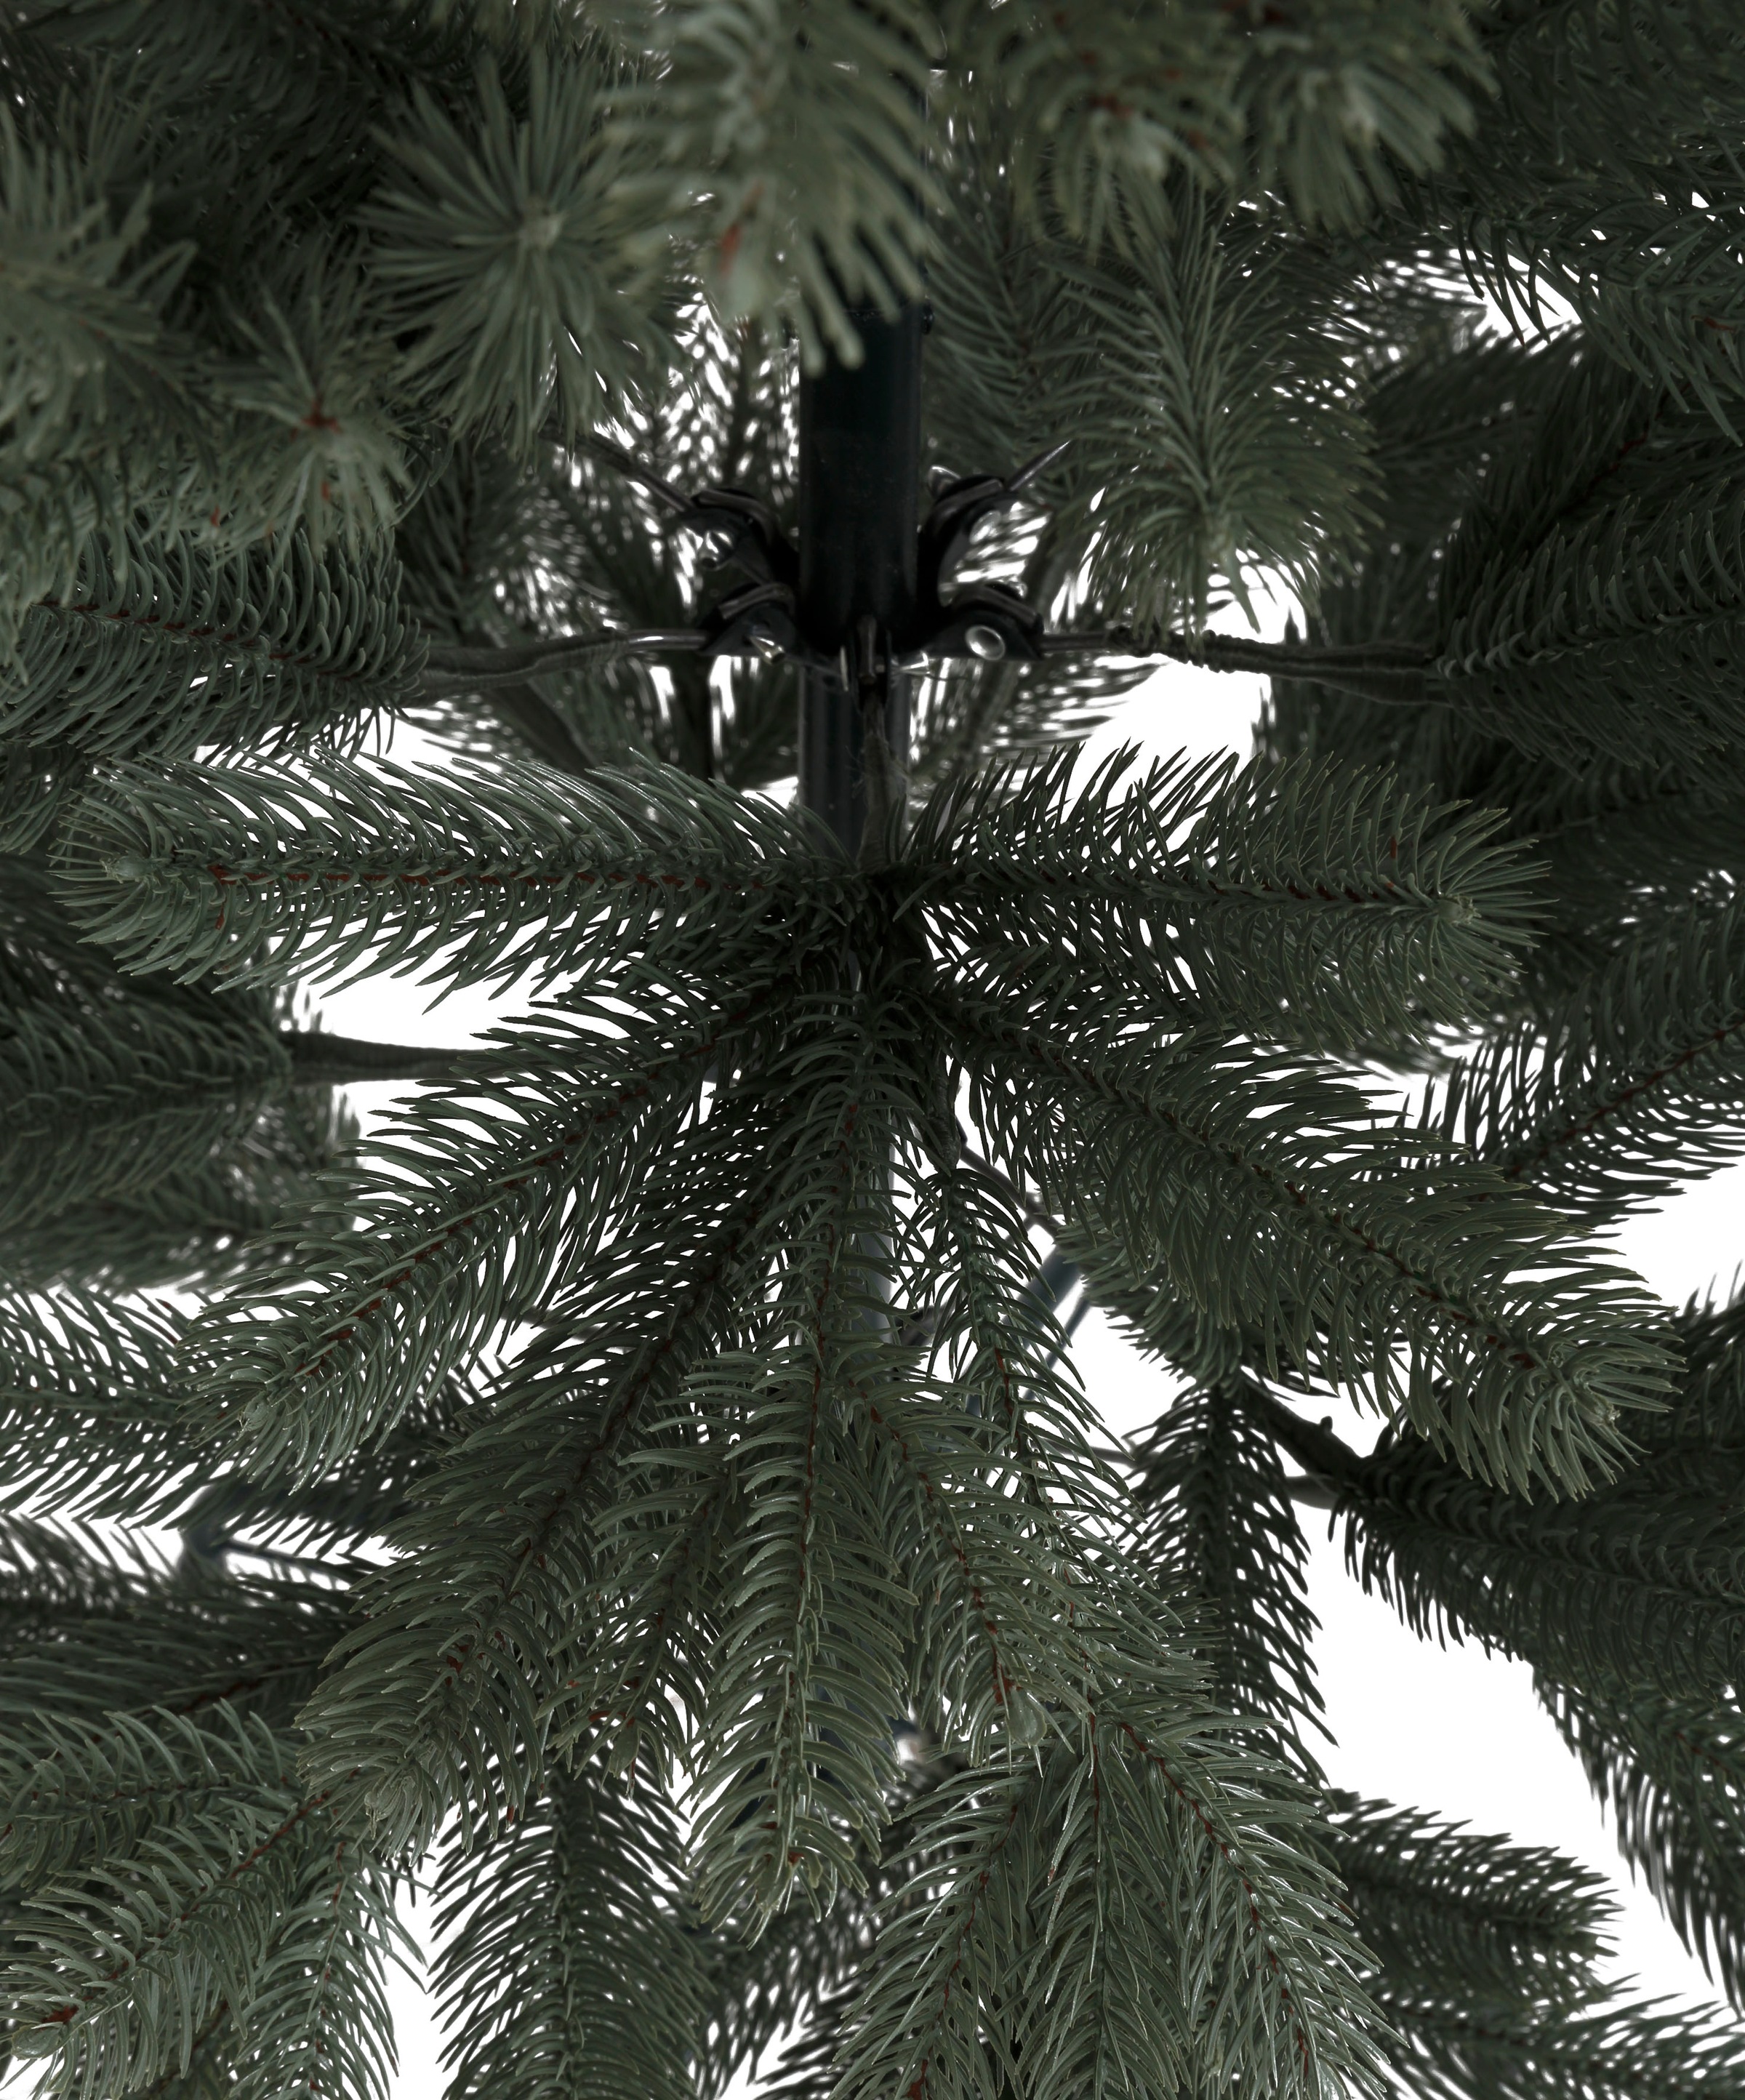 Myflair Möbel & Accessoires Künstlicher Weihnachtsbaum »Weihnachtsdeko, Grey/Green, künstlicher Christbaum, Tannenbaum«, mit Metallständer und biegsamen Zweigen